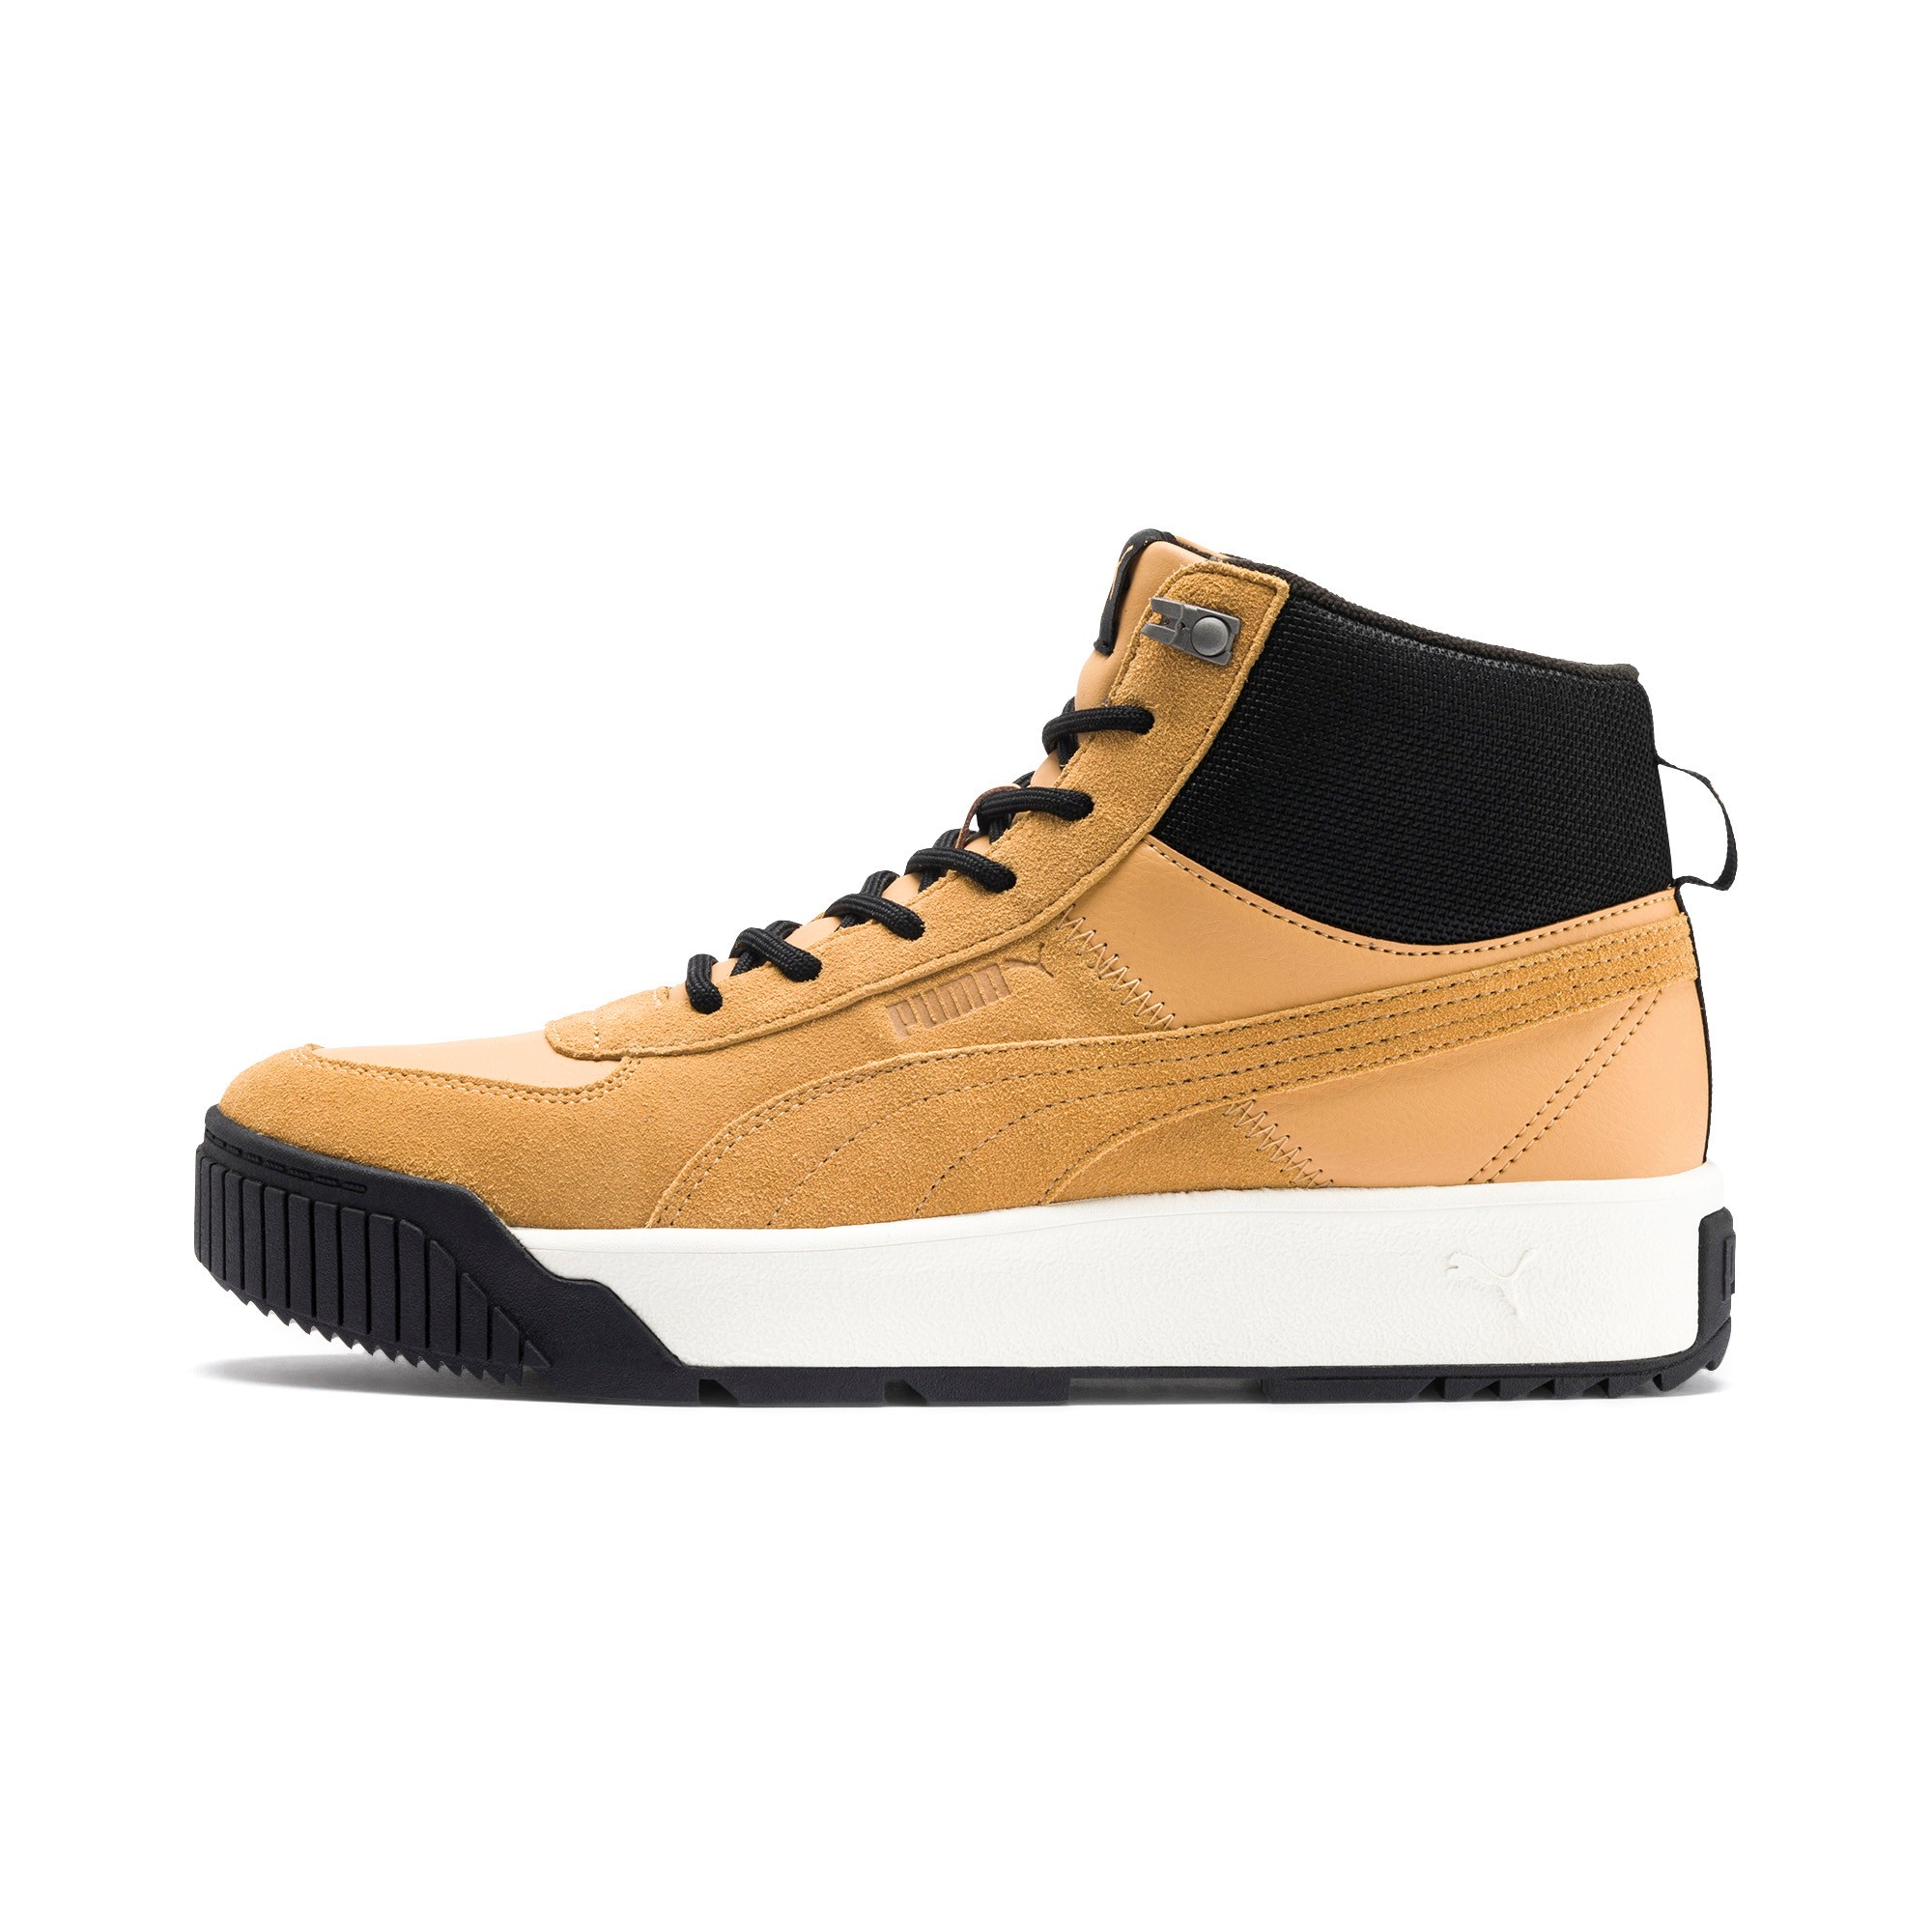 Puma Herren Tarrenz SB Hoher Sneaker  Boots Stiefel 370551 02